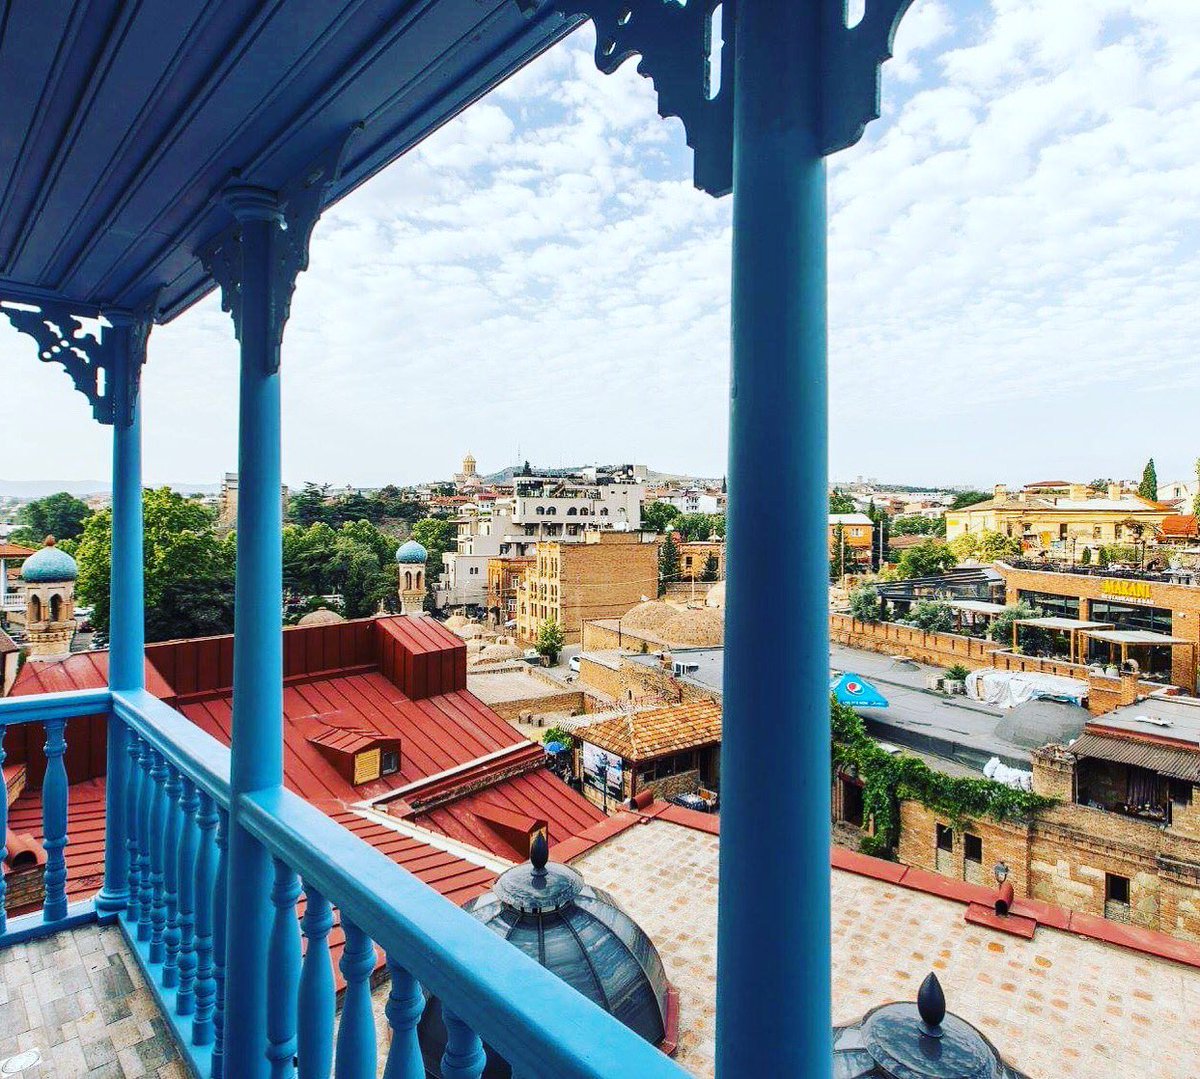 Good Morning World!
Enjoy magical view from our Superior Room @HKhokhobi 

#beautifulday #Tbilisi #travelling #amazing #view #balcony #hotel #oldcity #vacations #travelwithstyle #tripadvisor #BucketList #exploretbilisi #traveltogeorgia #Abanotubani #sulphurbaths #besthotel